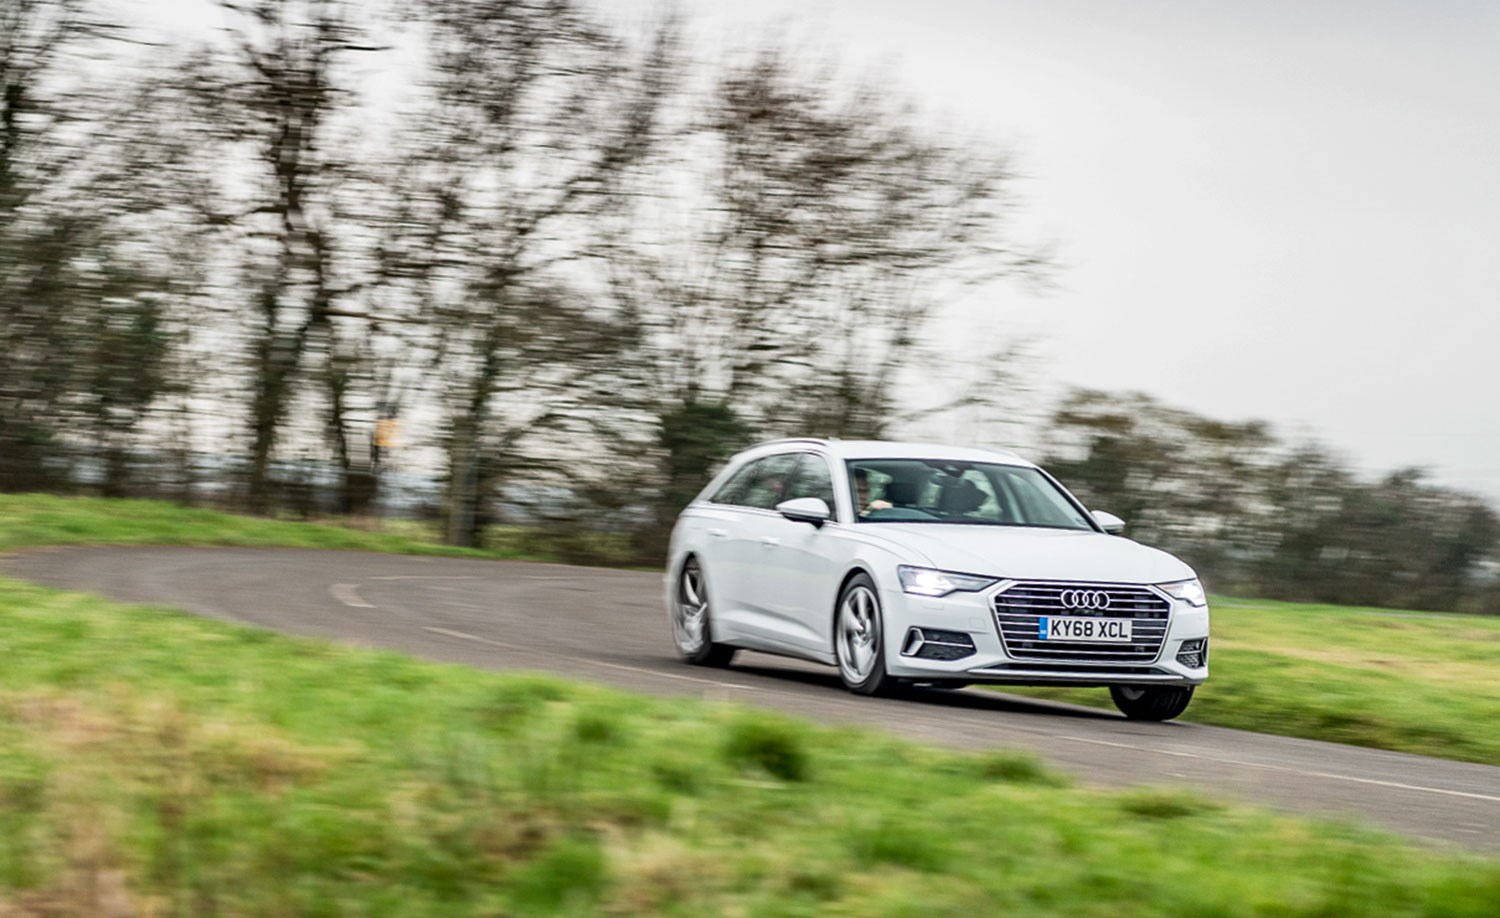 New Audi A6 Avant Long-term Review (2020)